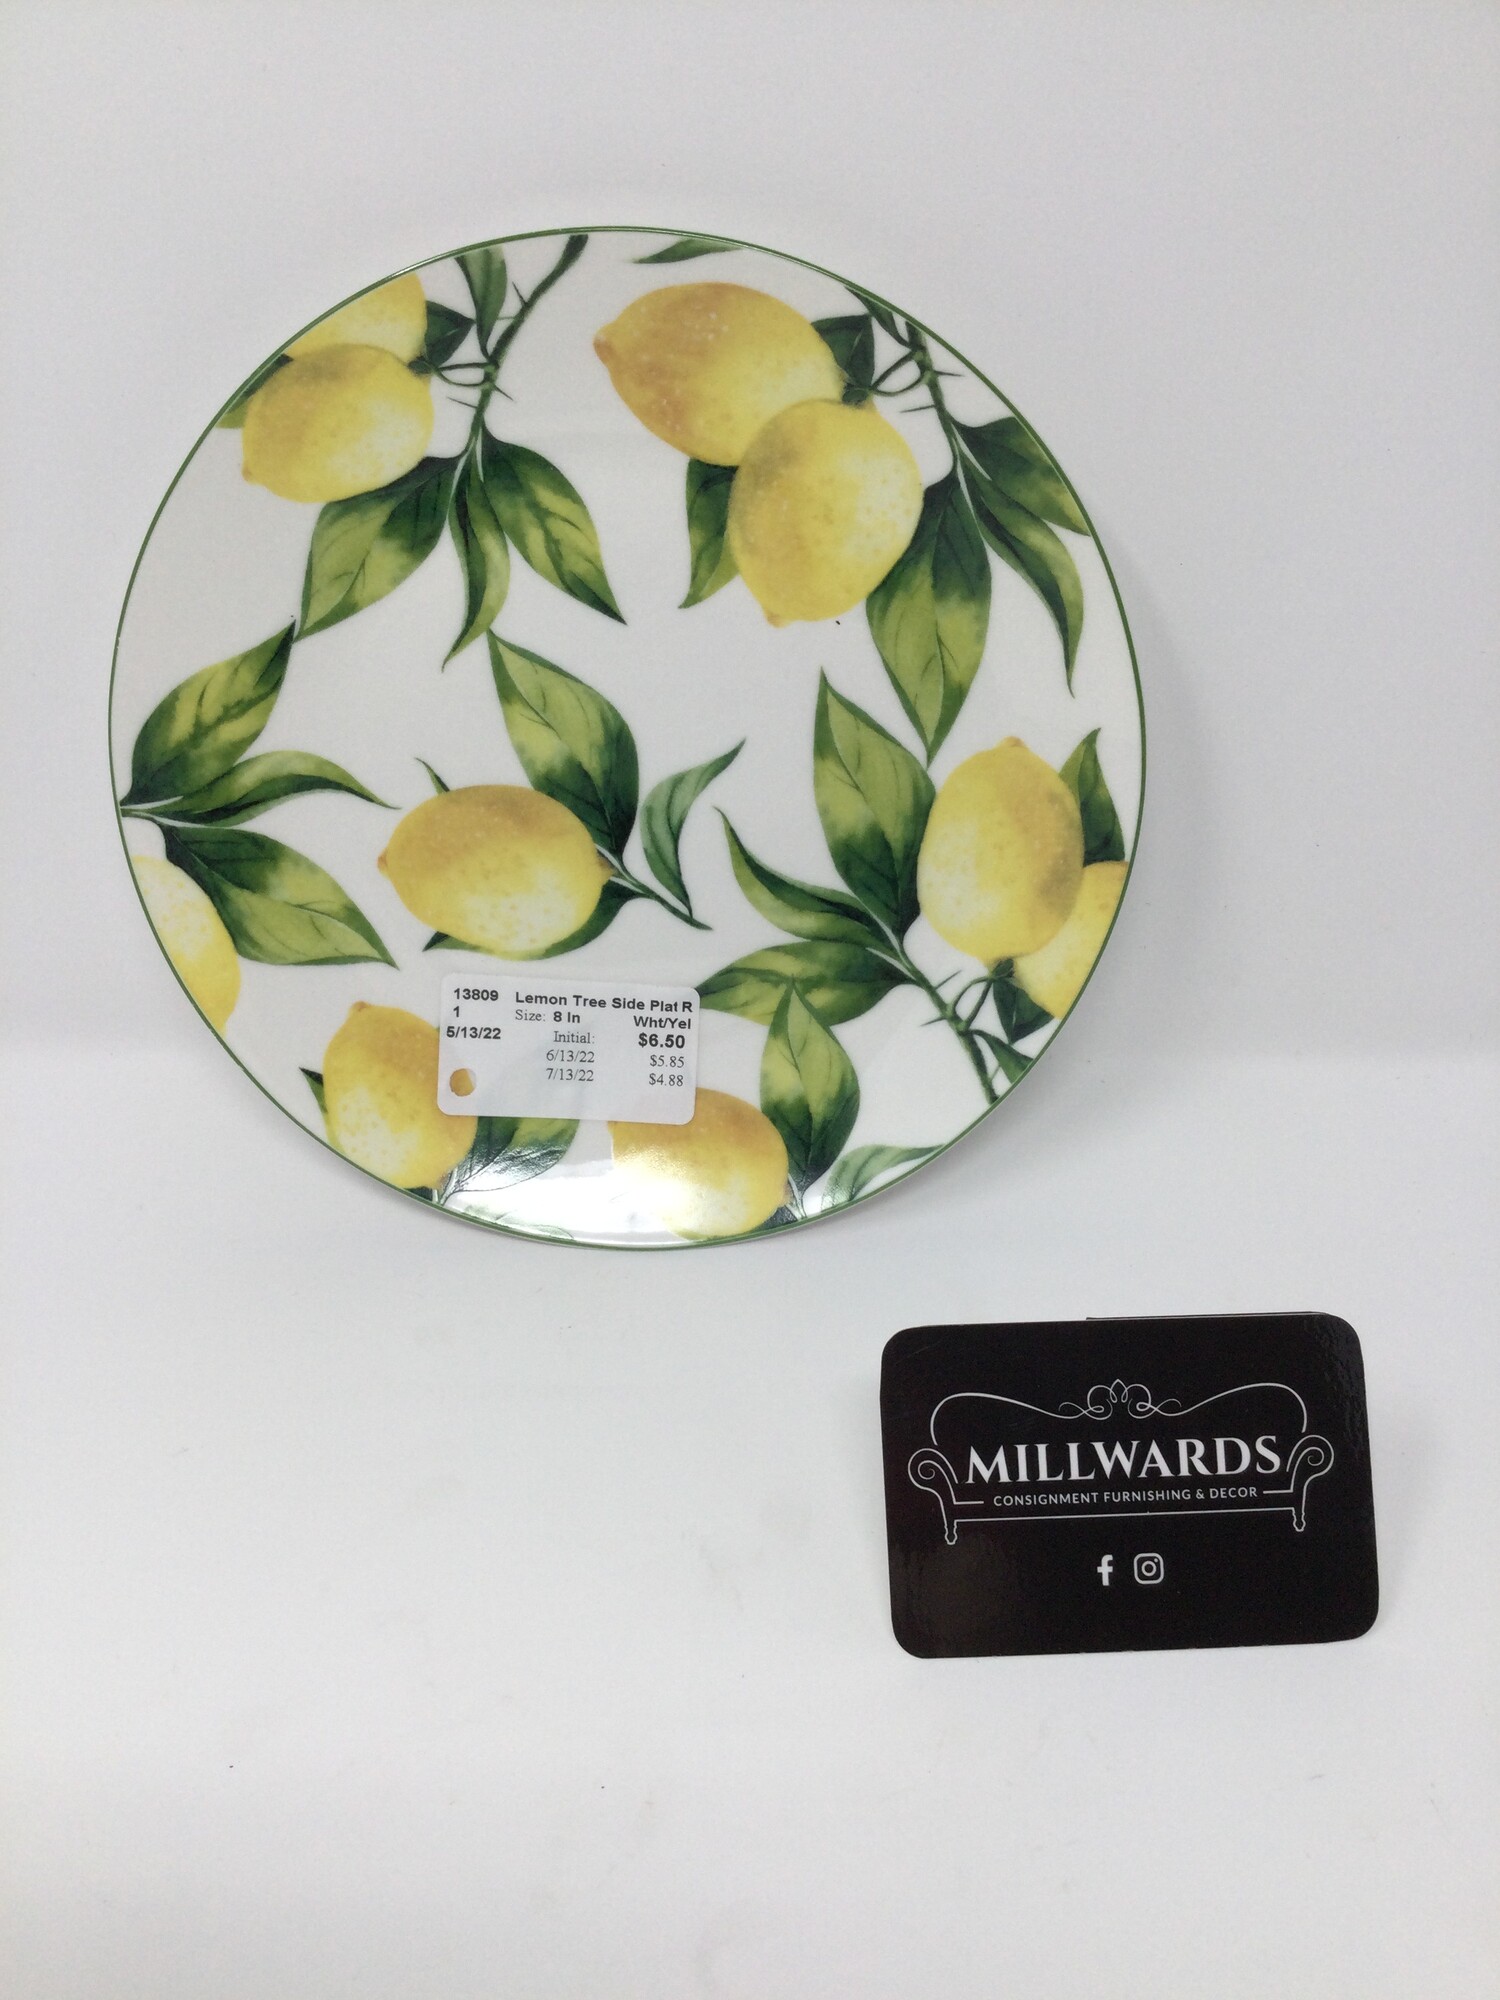 Lemon Tree Side Plate
By Abbott
White & Yellow
Size : 8 In